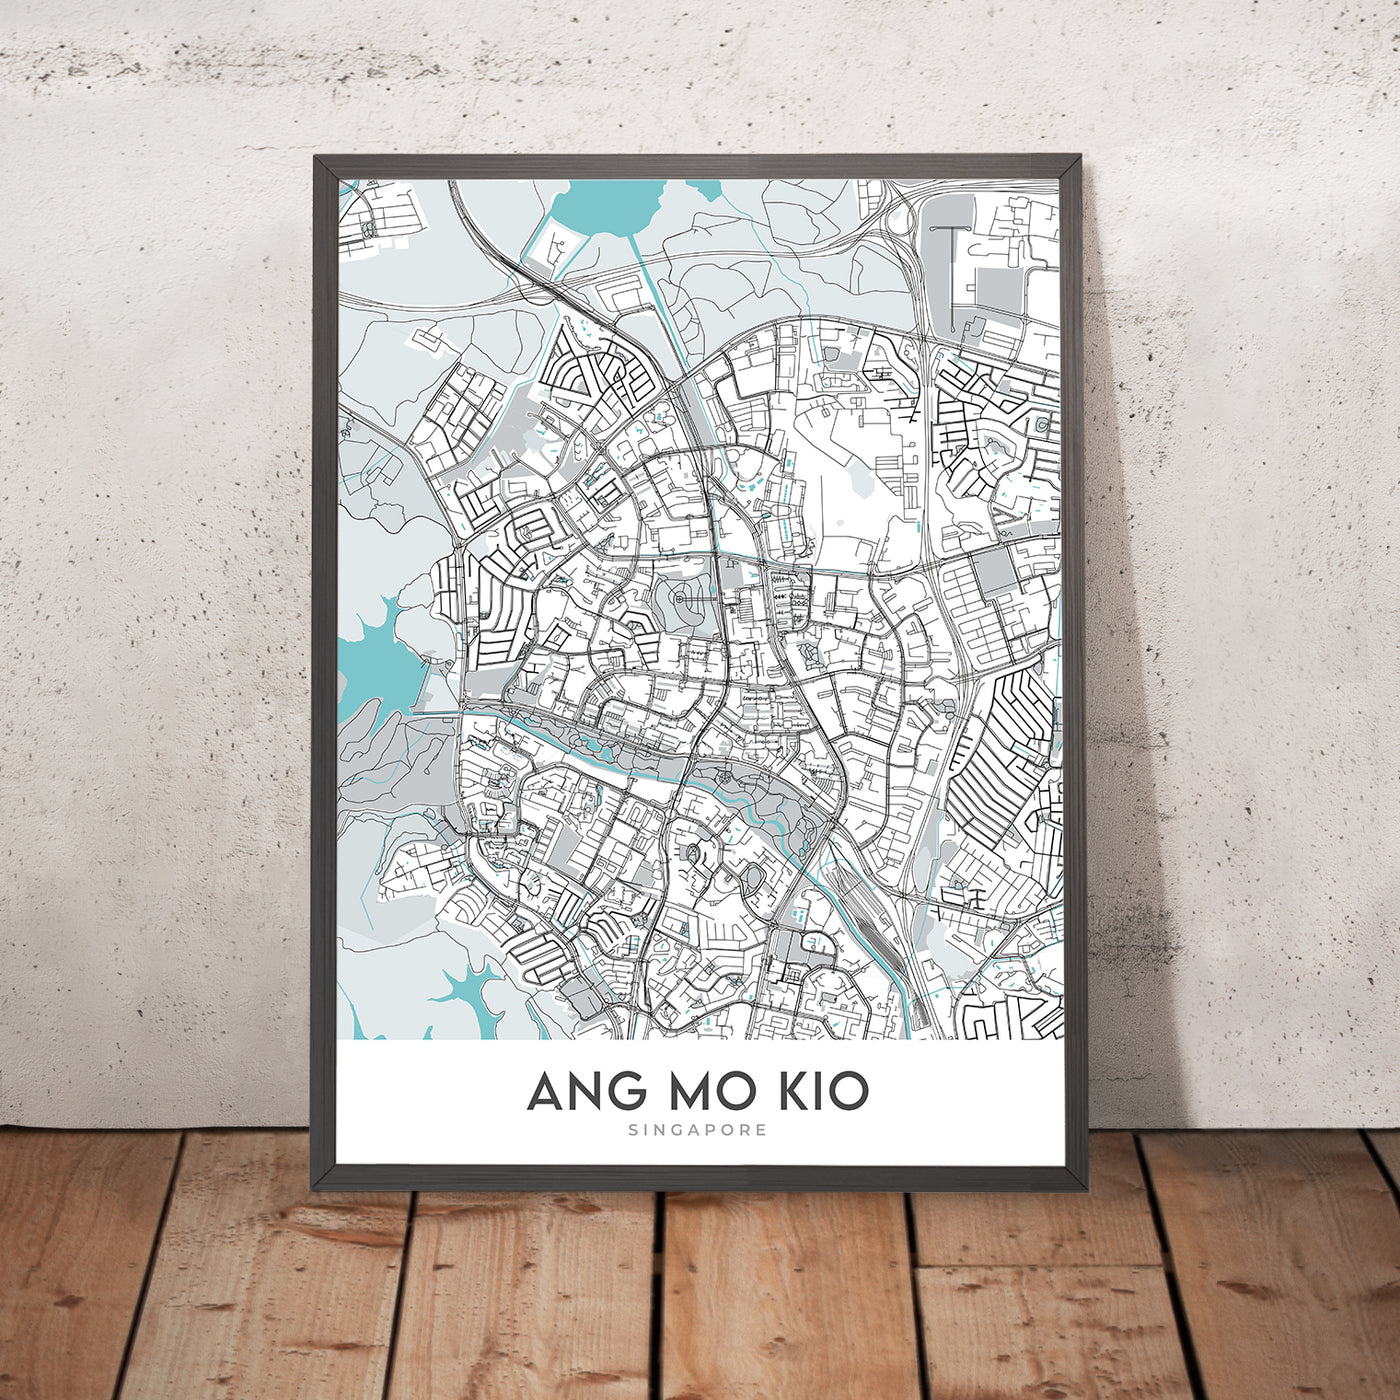 Moderner Stadtplan von Ang Mo Kio, Singapur: Bishan-Ang Mo Kio Park, Lower Peirce Reservoir, AMK Hub, Yio Chu Kang Rd, Ang Mo Kio Ave 3